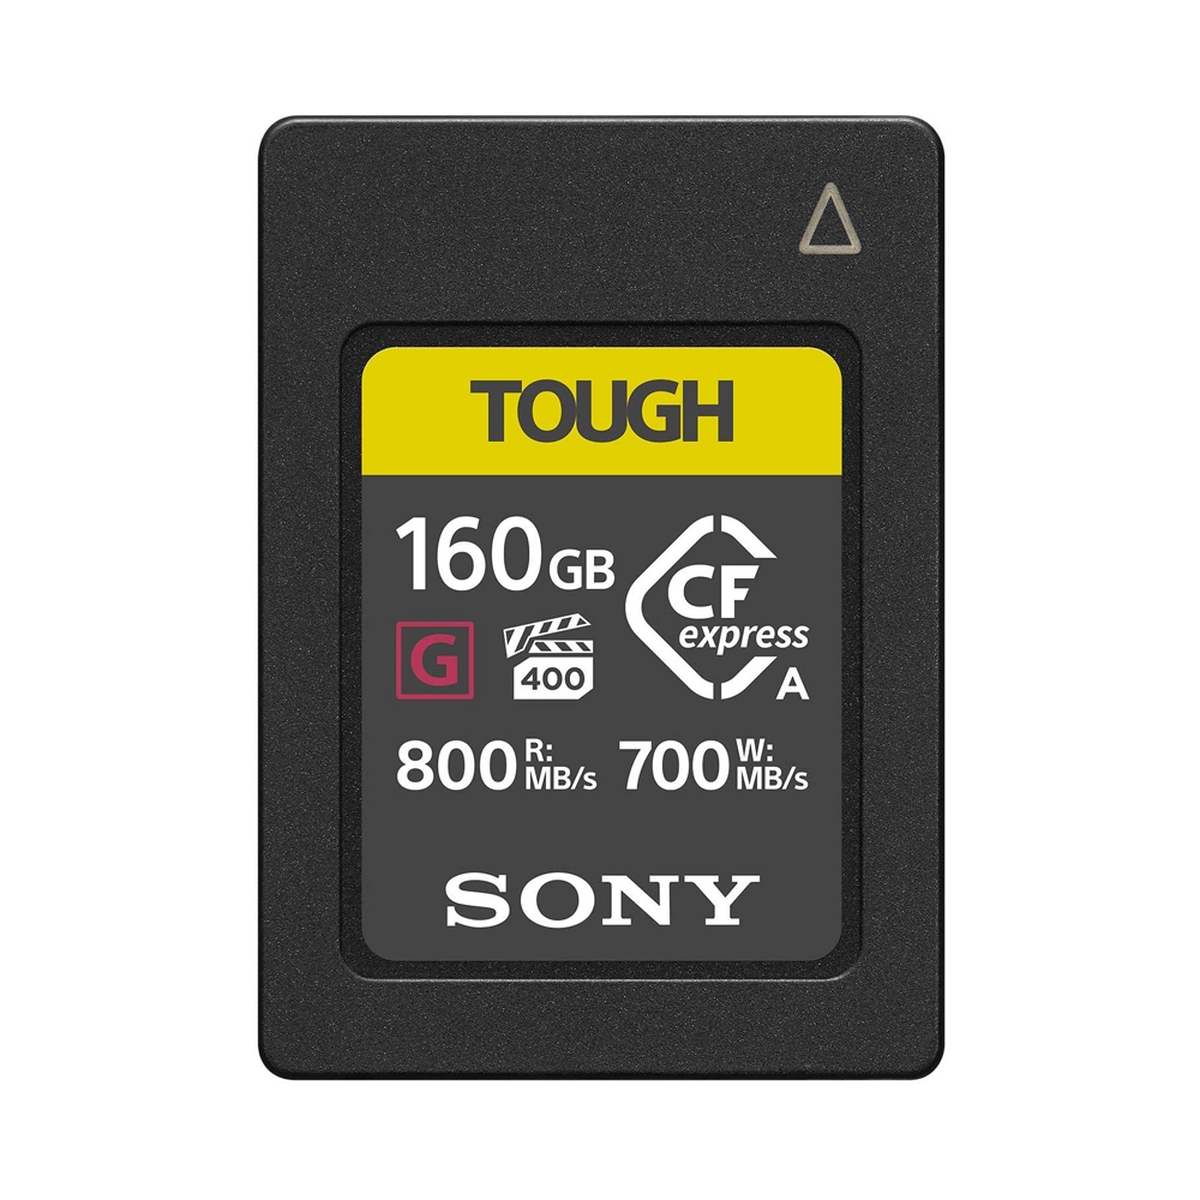 Sony 160 GB CFexpress Tough G Typ A